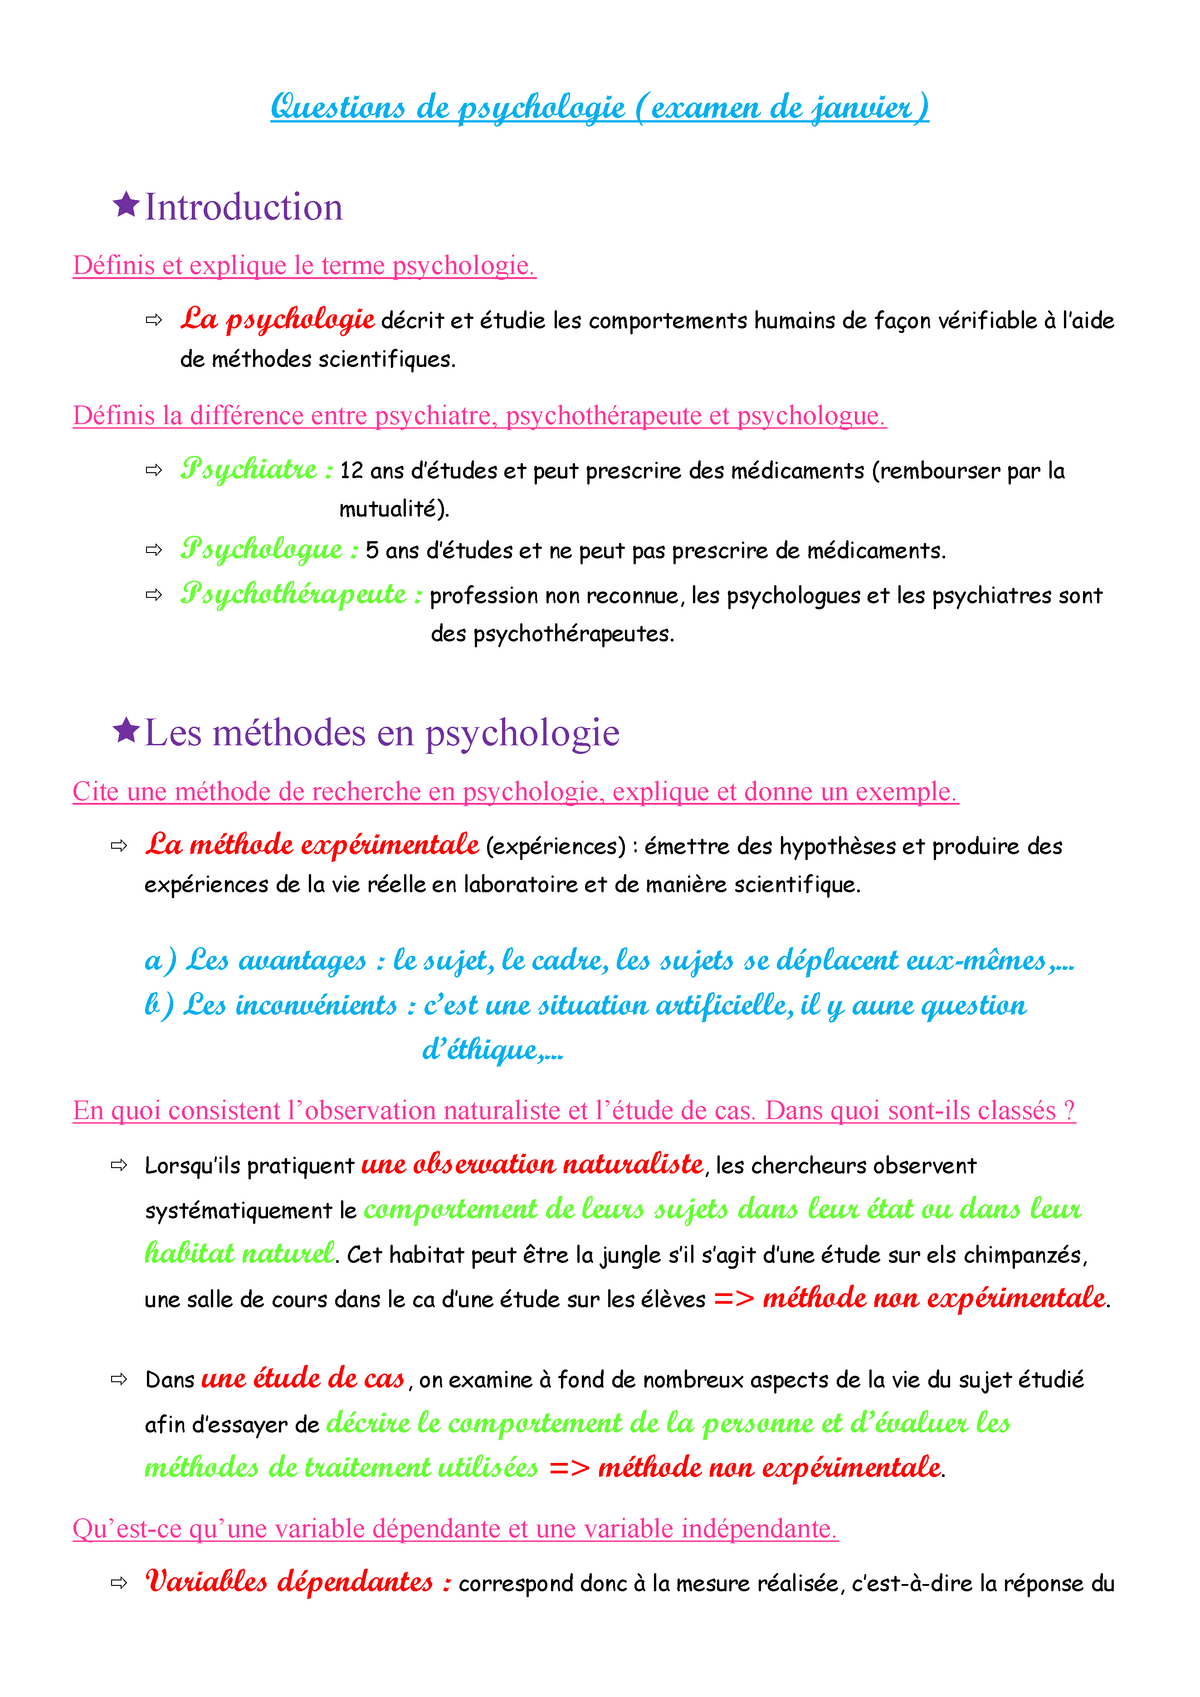 Psychologie Resume Psycho Questions De Psychologie Examen De Janvier Introduction Definis Et Studocu